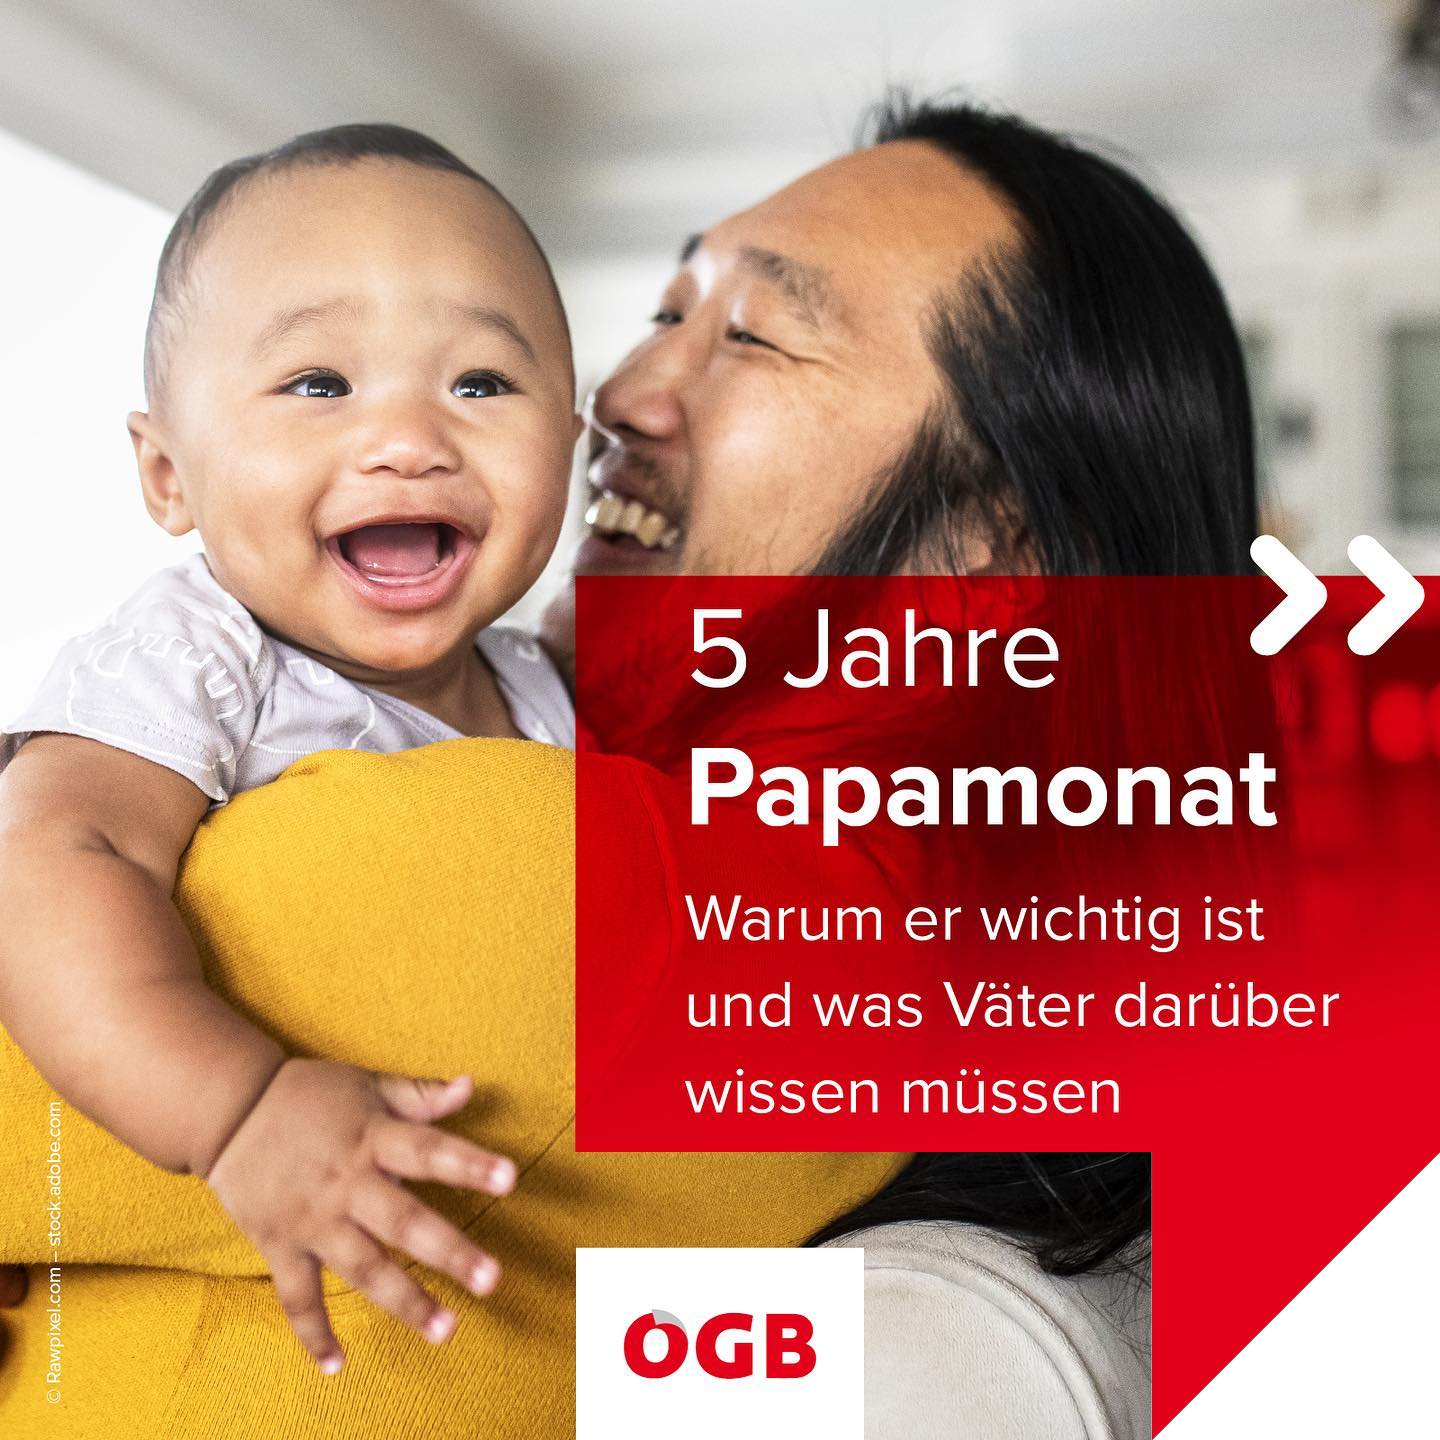 Grafik mit Mann, der lachendes Baby hält und Aufschrift: "5 Jahre Papamonat"